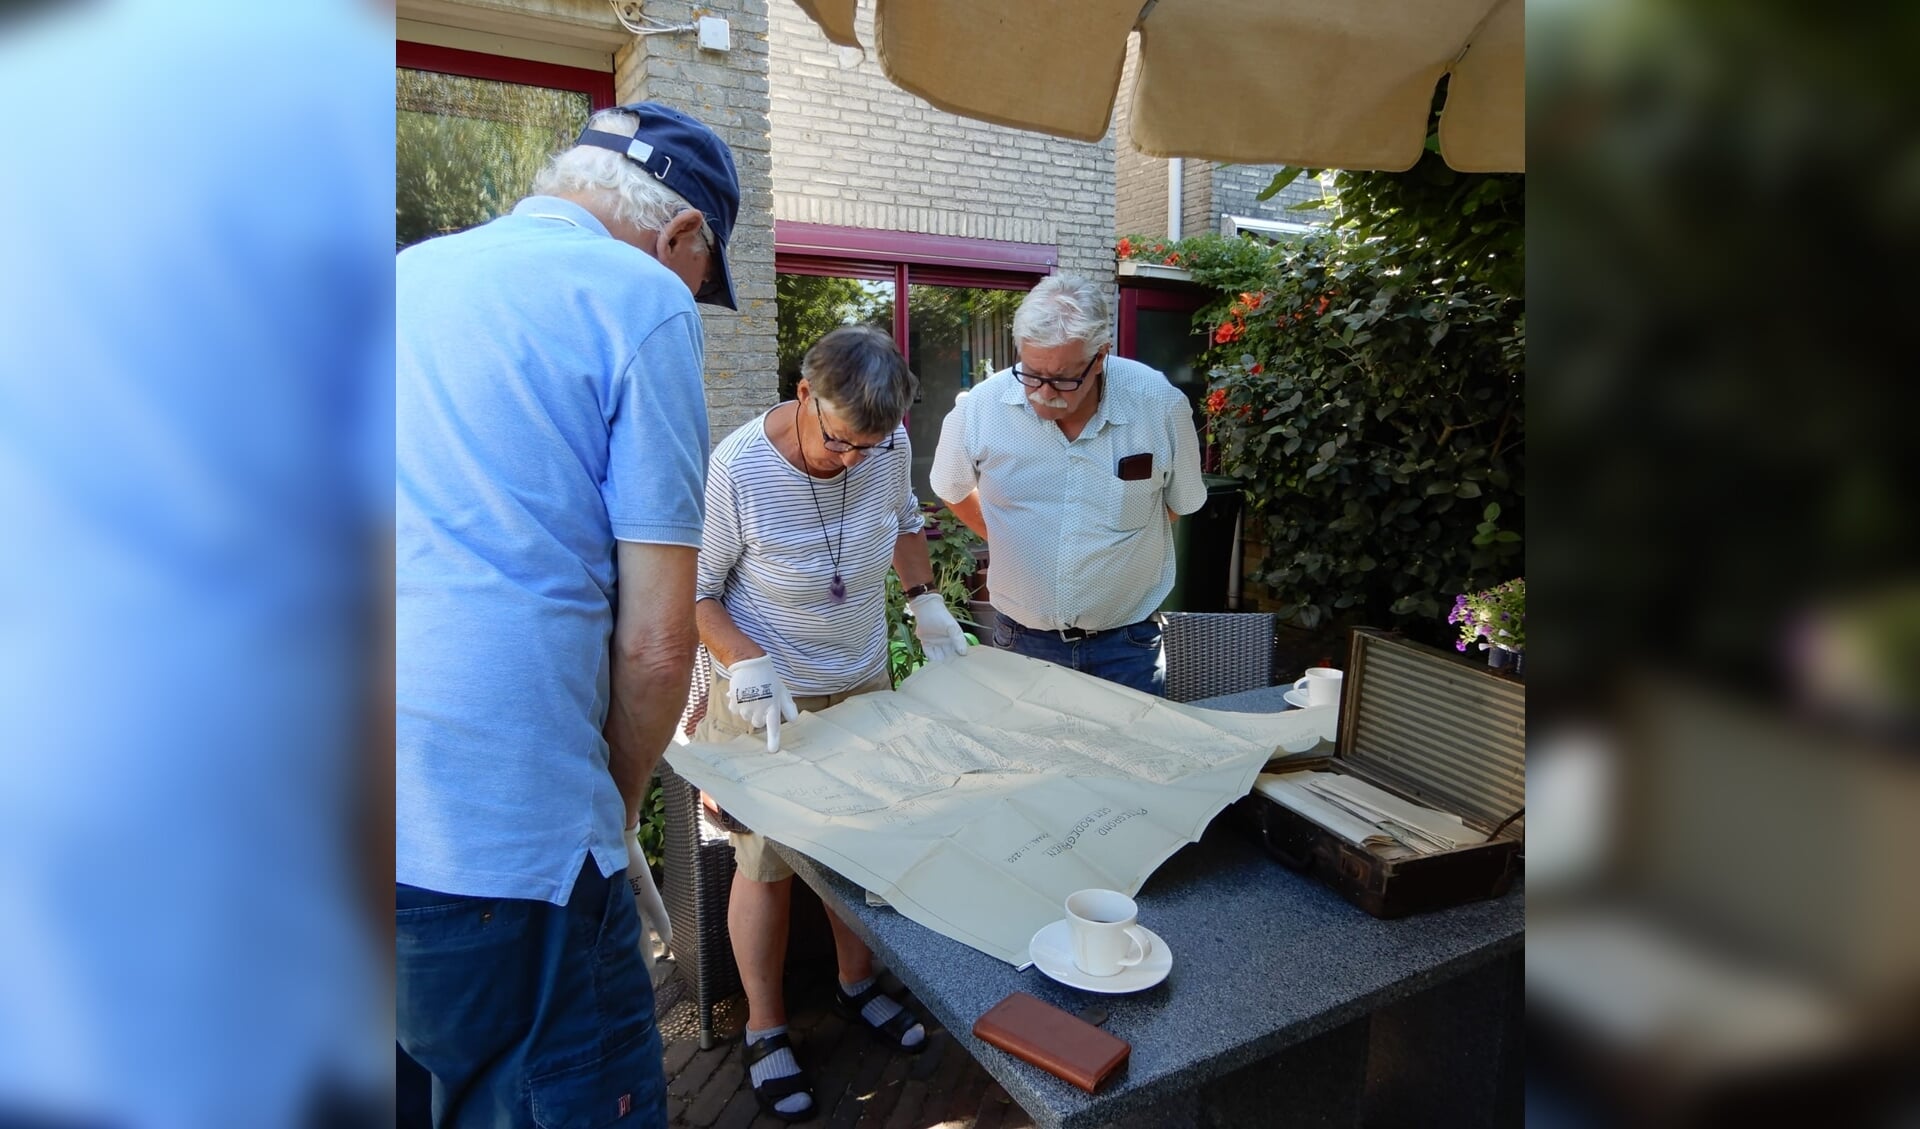 Vrijdagochtend 7 augustus hebben Kees Vaessen en Dick Pepplinkhuizen uit Dodewaard, beiden kleinzoons van Cornelis Burggraaf, het verzetskoffertje van Cornelis Burggraaf na 75 jaar aan omzwervingen aangeboden aan Cock Karssen en de Historische Kring.